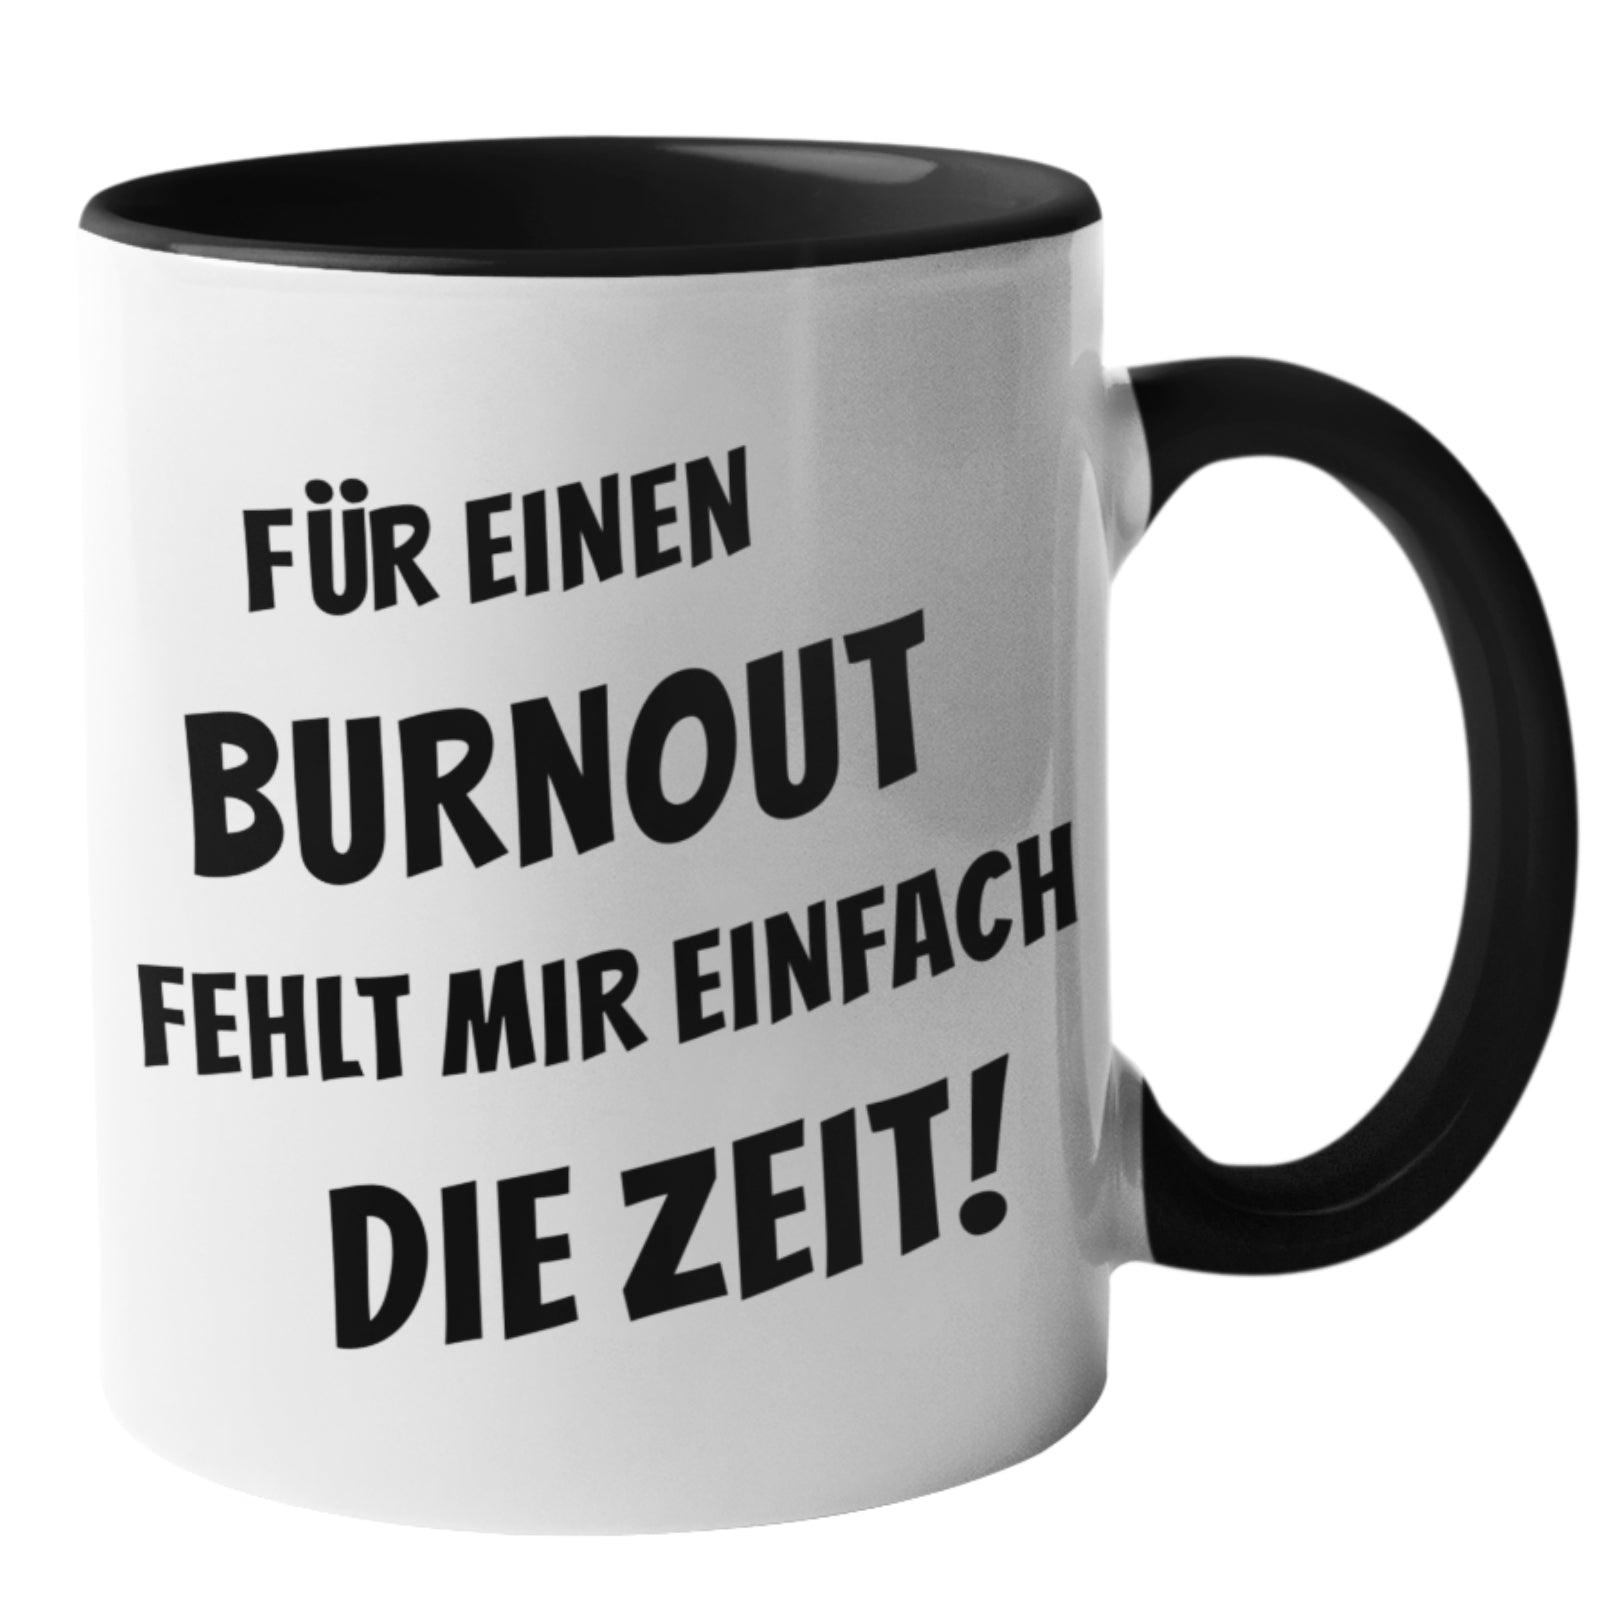 Tassen mit Sprüchen - lustige Tassen - Tasse für einen Burnout fehlt mir einfach die Zeit